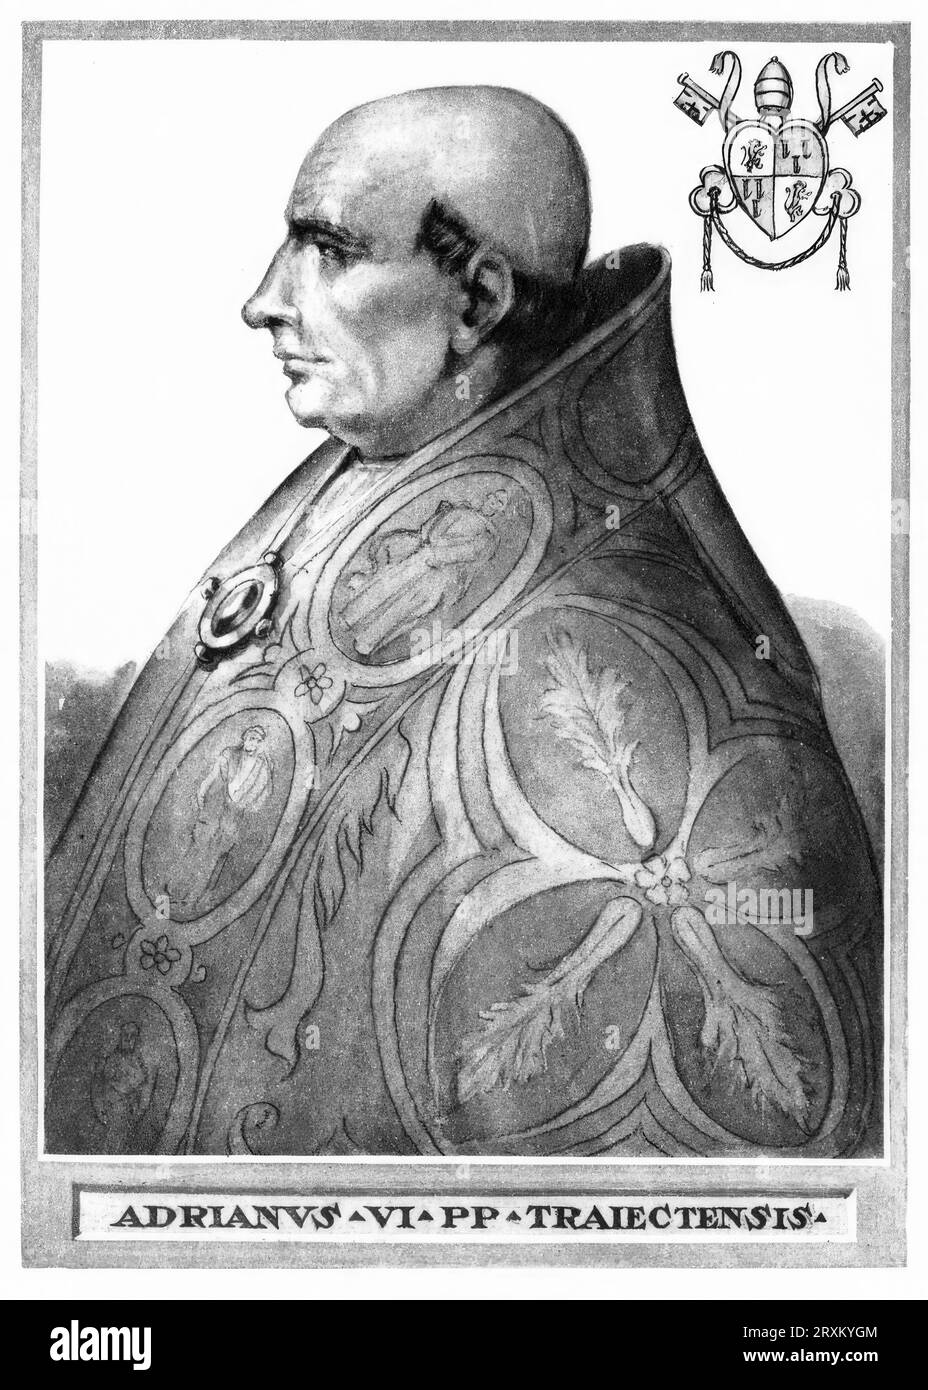 Hadrian VI., mit bürgerlichem Namen Adriaan Floriszoon (geb. Boeyens bzw. Adriaan Florisz d’Edel, in damaliger Schreibweise Adriaen Floriszoon Boeiens, im Deutschen auch unter dem Namen Adrian von Utrecht bekannt (geb. März 1459 in Utrecht, verstorben am 14. September 1523 in Rom), war vom 9. Januar 1522 bis zu seinem Tode Papst, Historisch, digital restaurierte Reproduktion von einer Vorlage aus dem 19. Jahrhundert/Hadrian VI., mit dem bürgerlichen Namen Adriaan Floriszoon (geb. Boeyens bzw. Adriaan Florisz d’Edel, in der früheren Schreibweise Adriaen Floriszoon Boeiens, auch in deutscher Sprache) Stockfoto